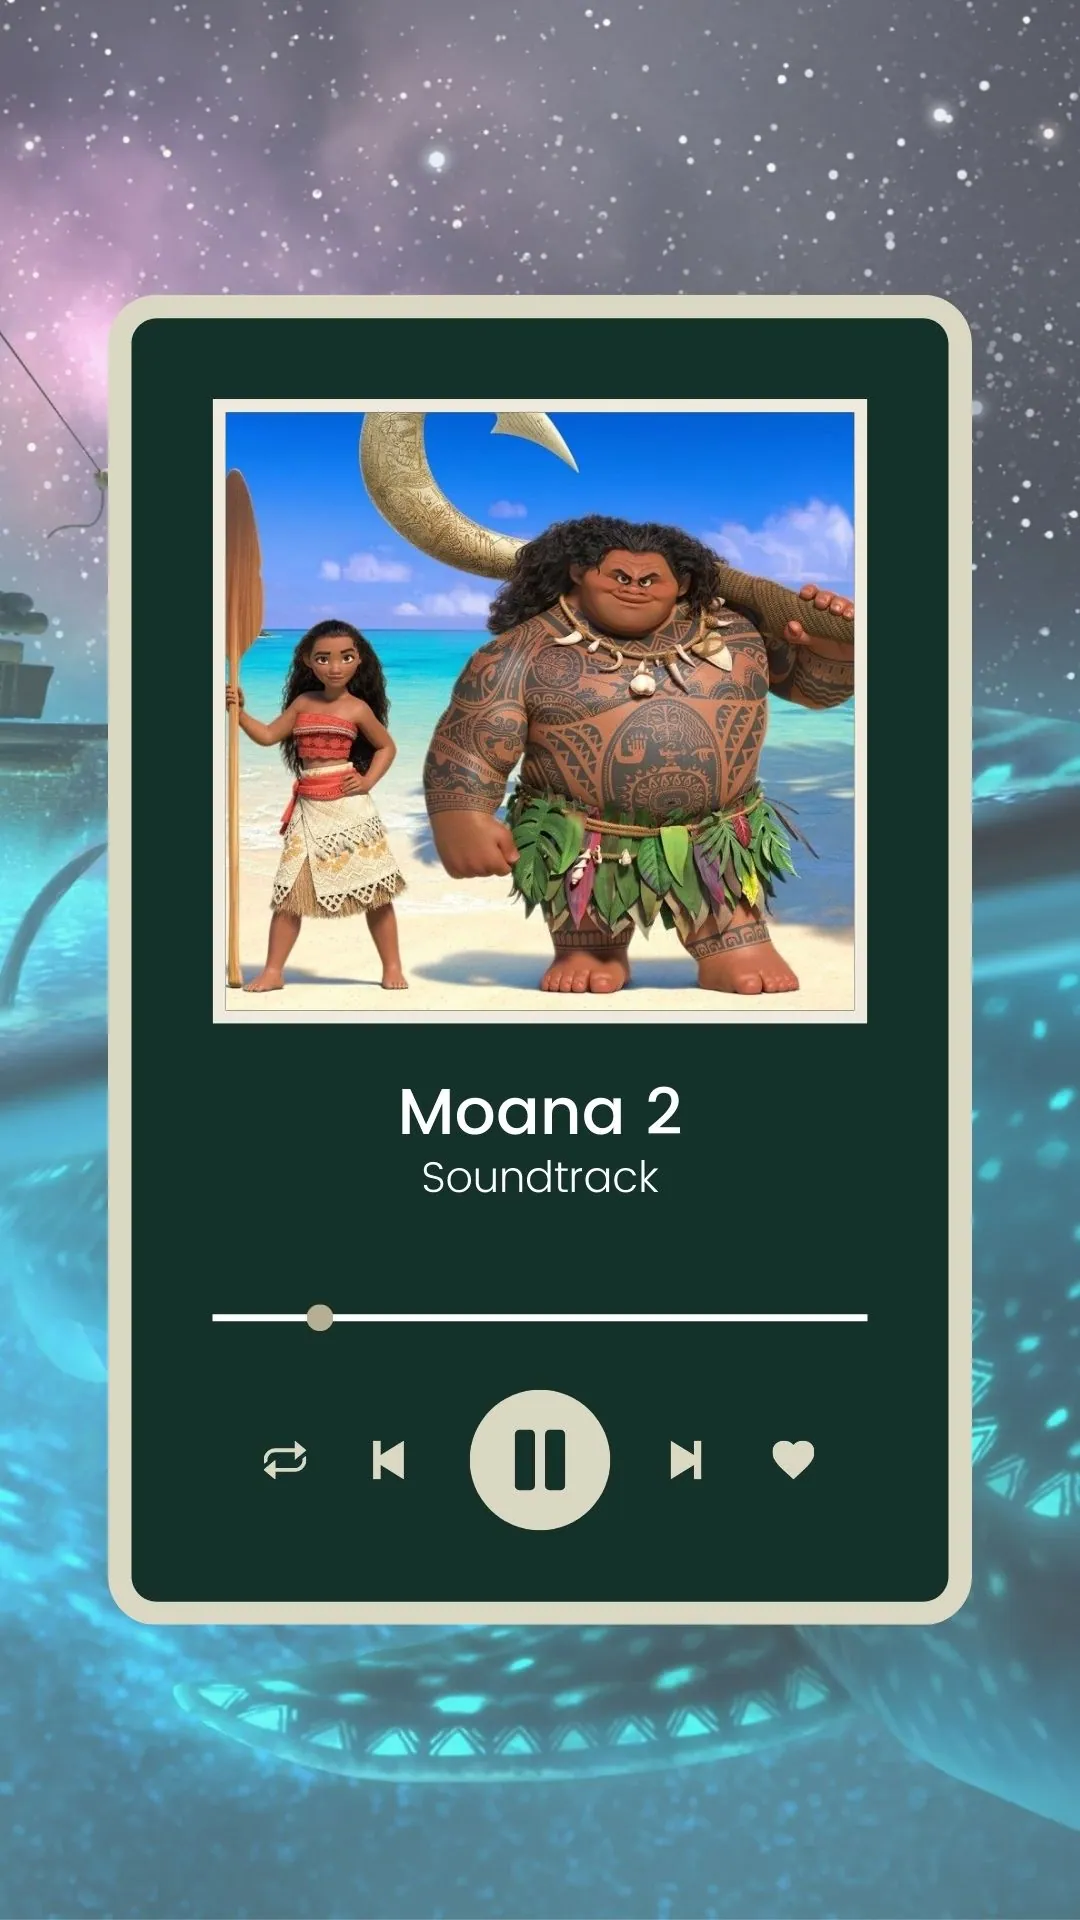 Moana 2 Soundtrack